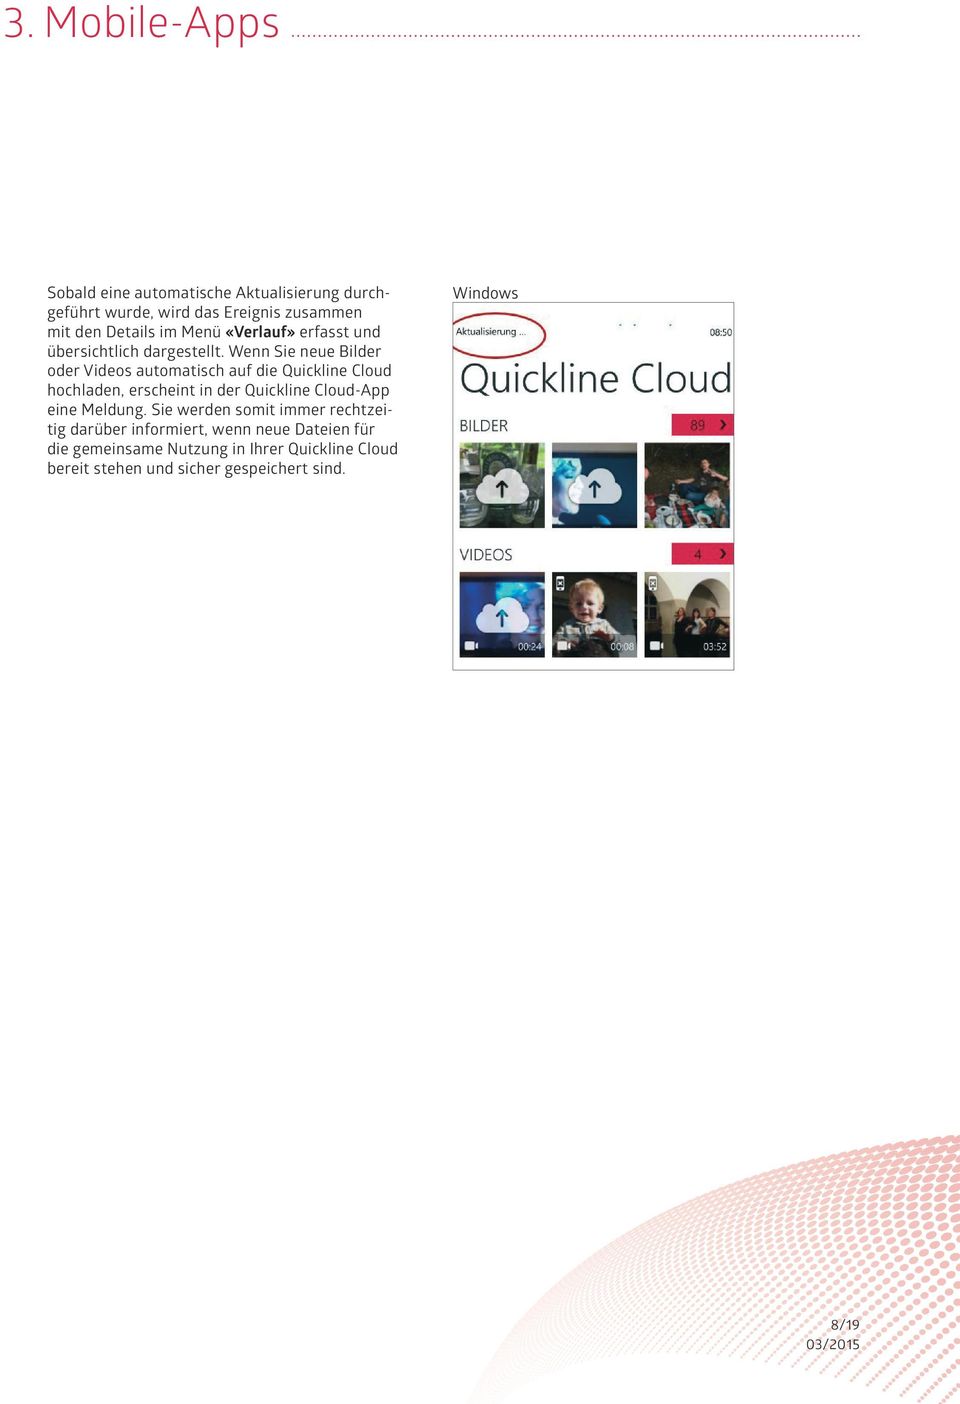 Wenn Sie neue Bilder oder Videos automatisch auf die Quickline Cloud hochladen, erscheint in der Quickline Cloud-App